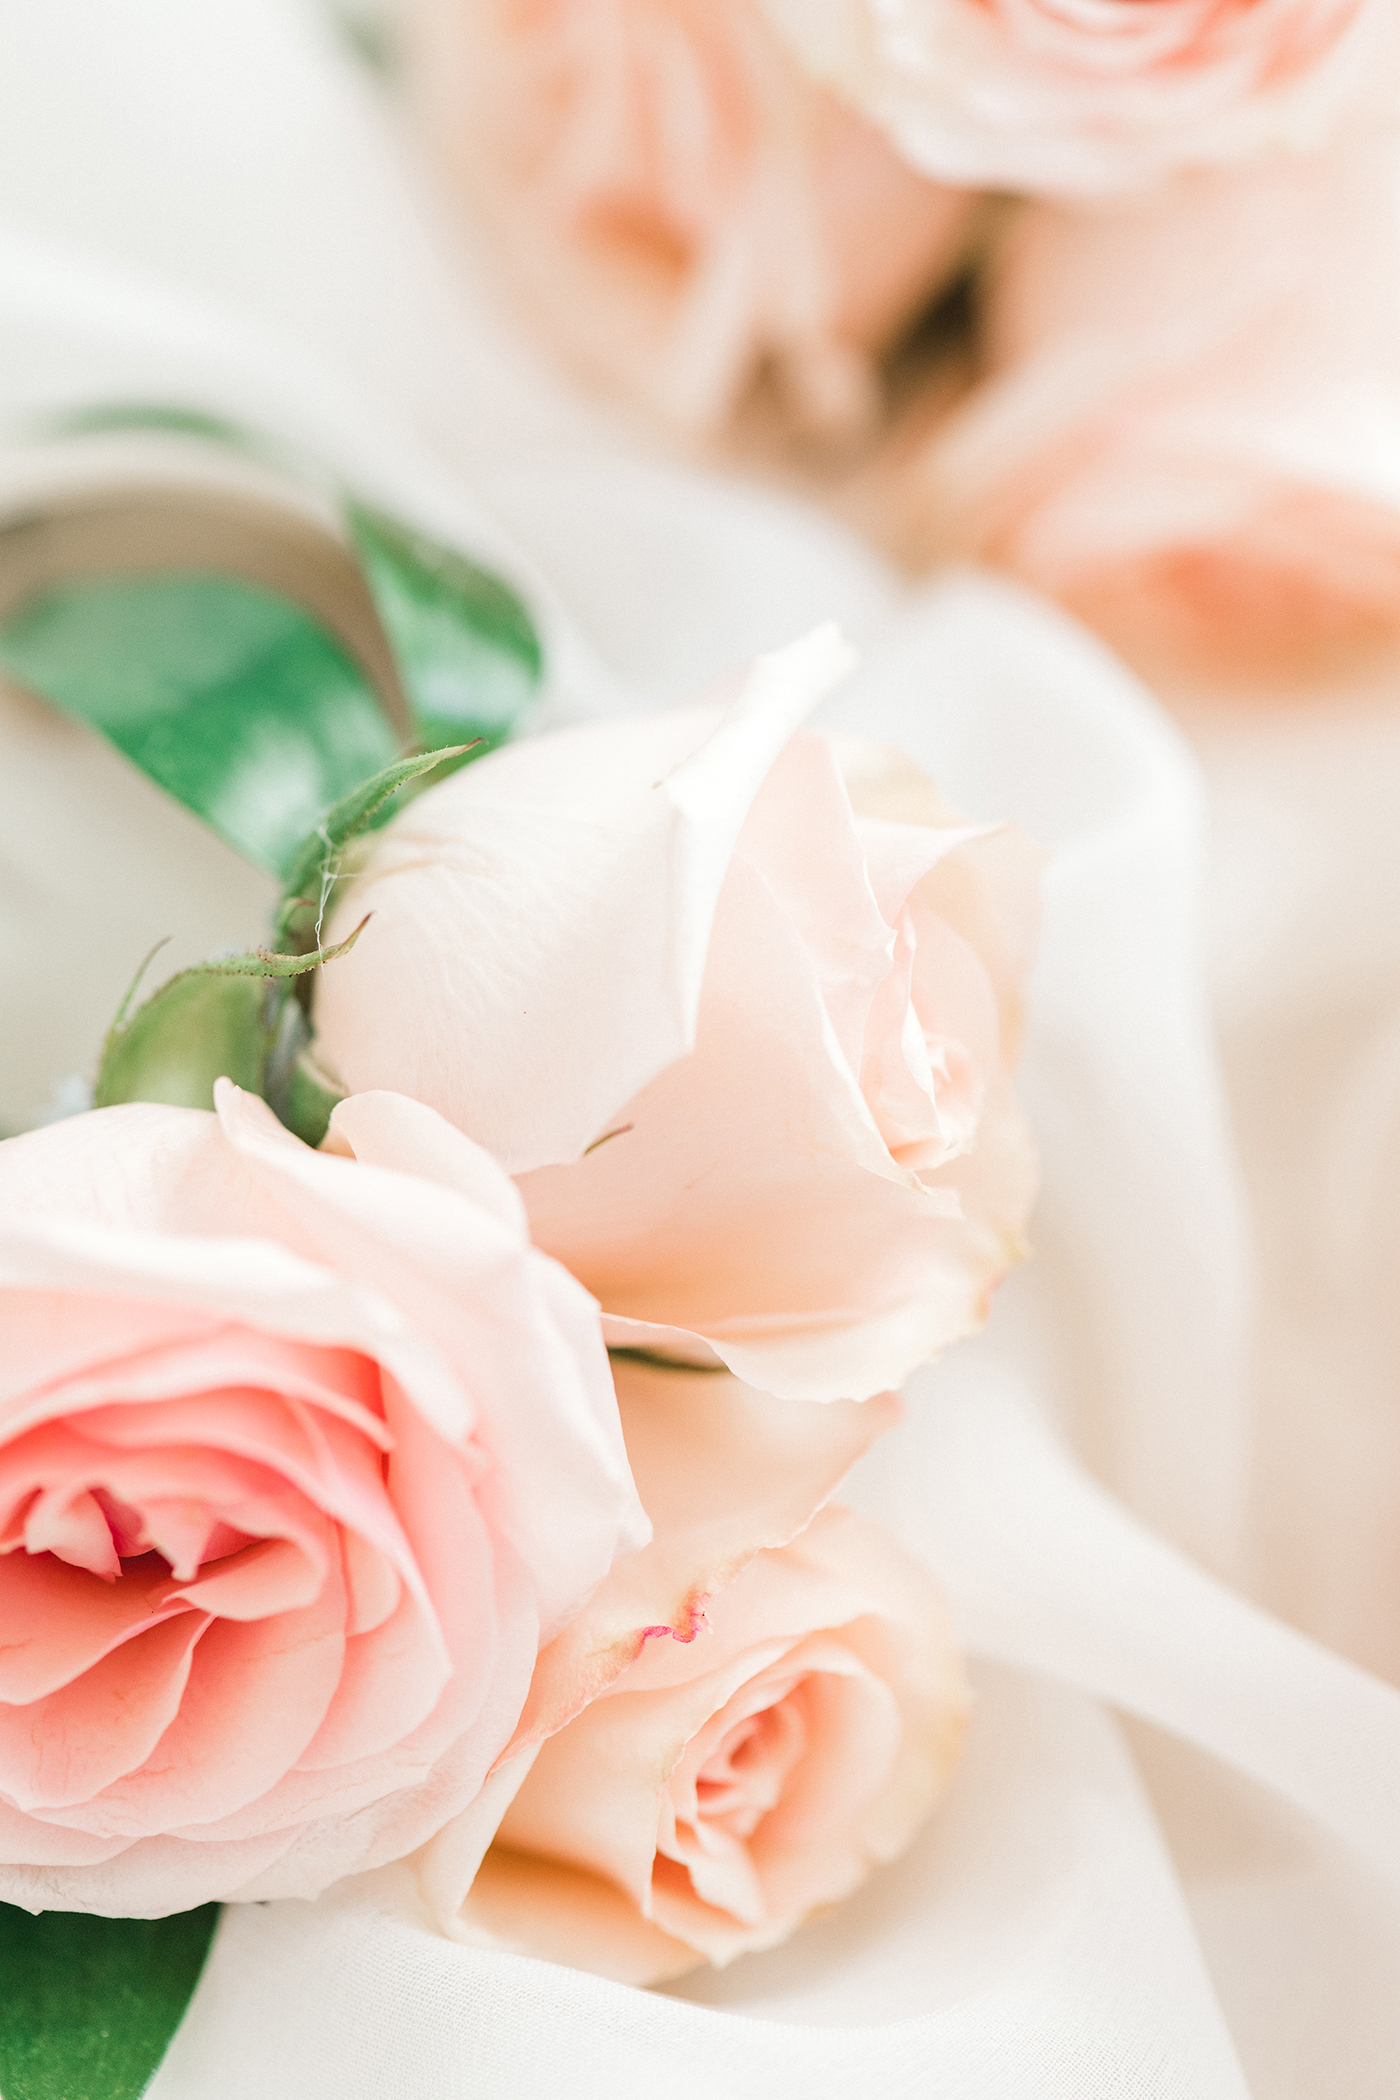 Dallas Wedding Floral Design - A Stylish Soiree - Dallas Wedding Florist